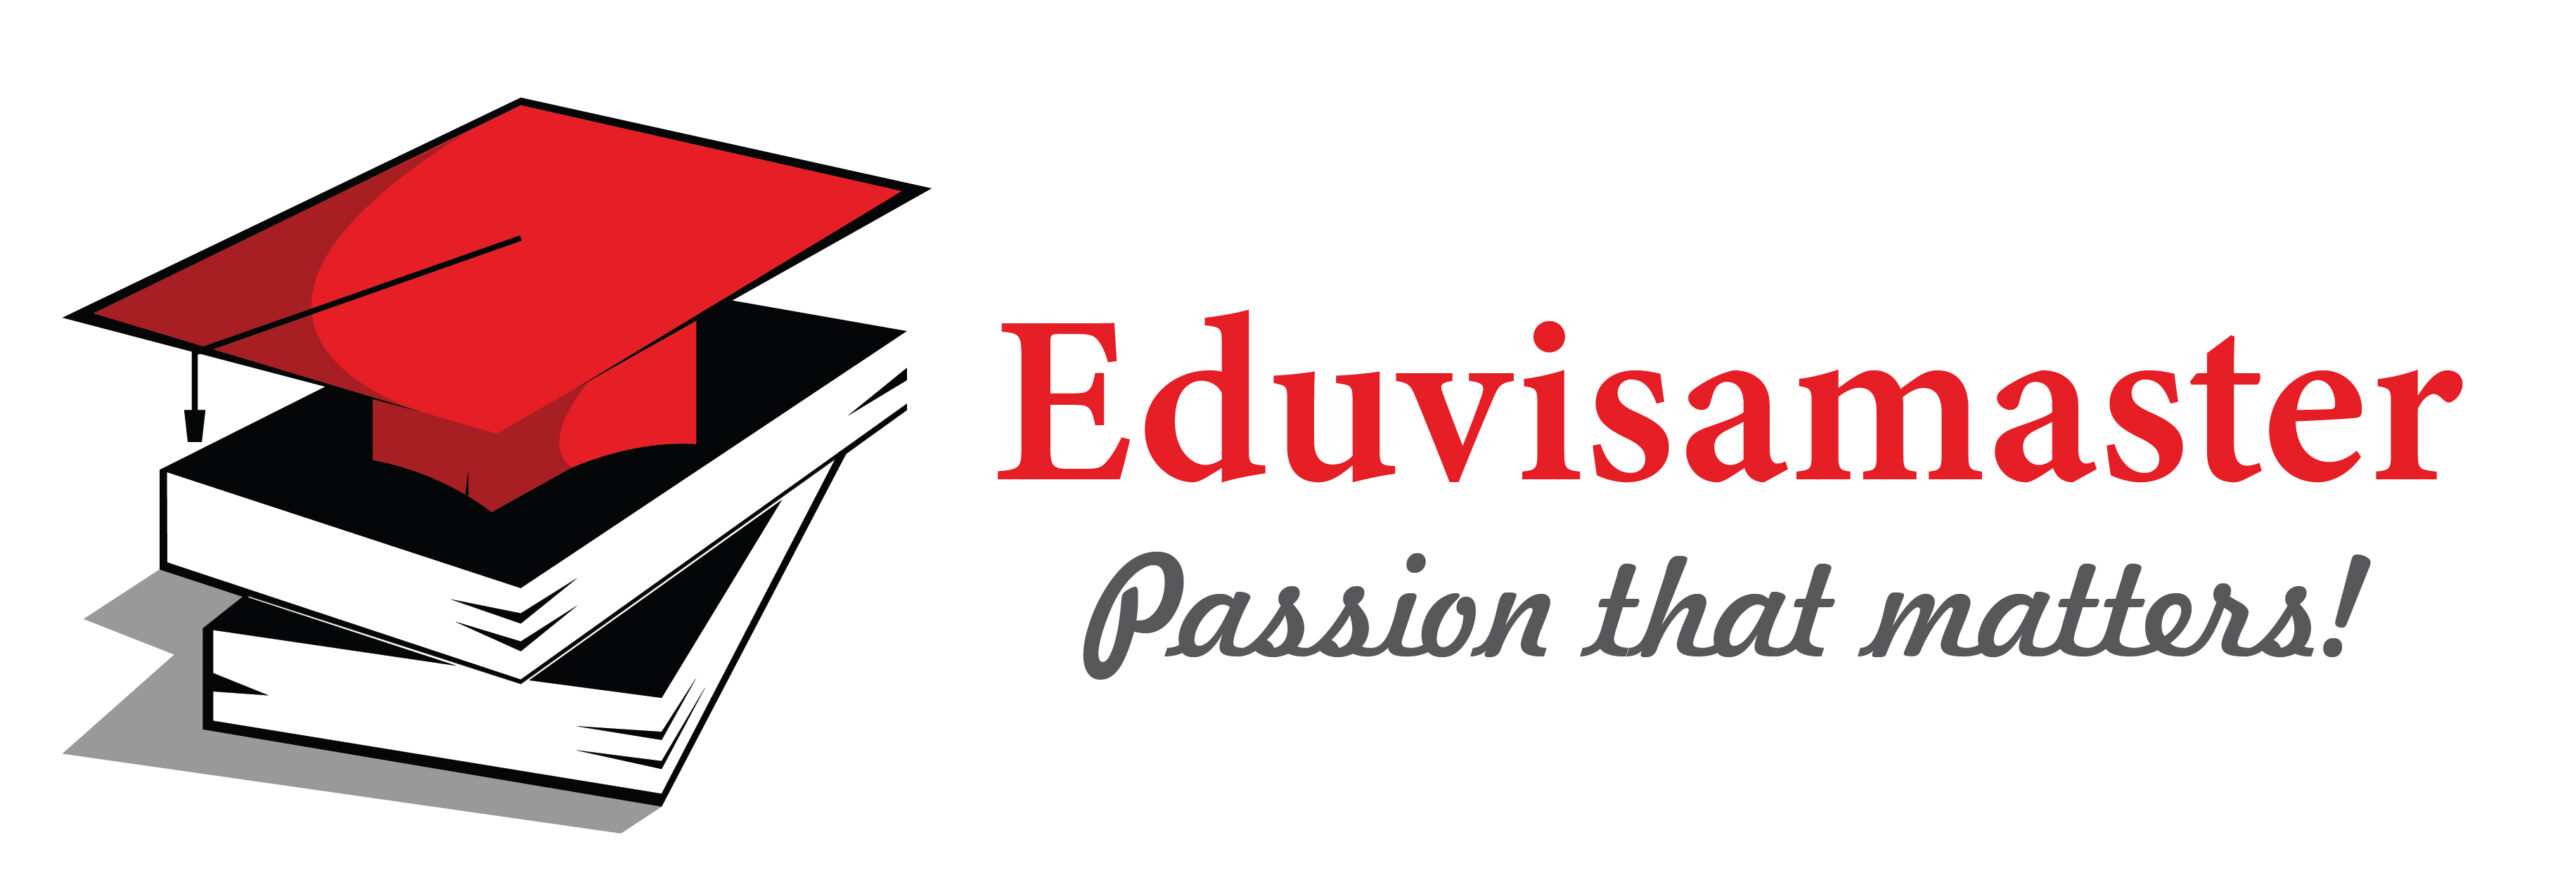 eduvisamaster-logo-scaled